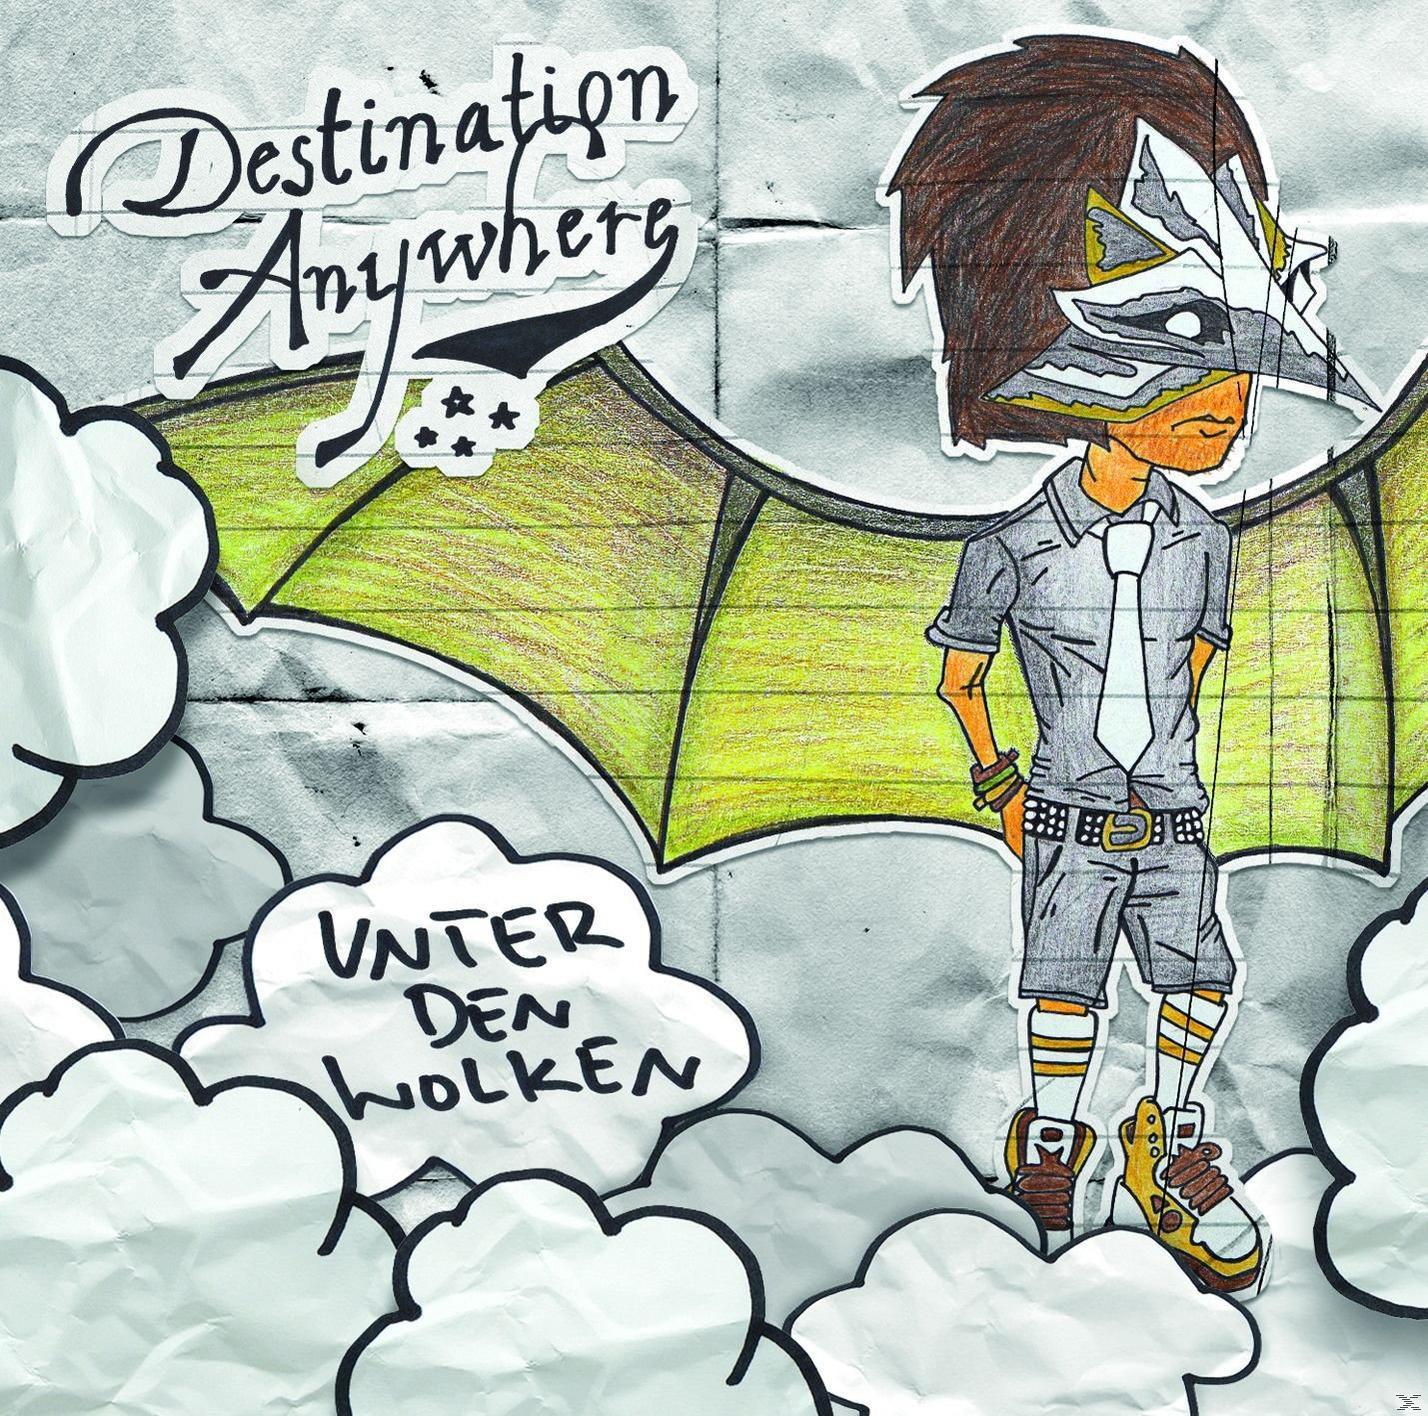 Anywhere Wolken (CD) - - Den Destination Unter